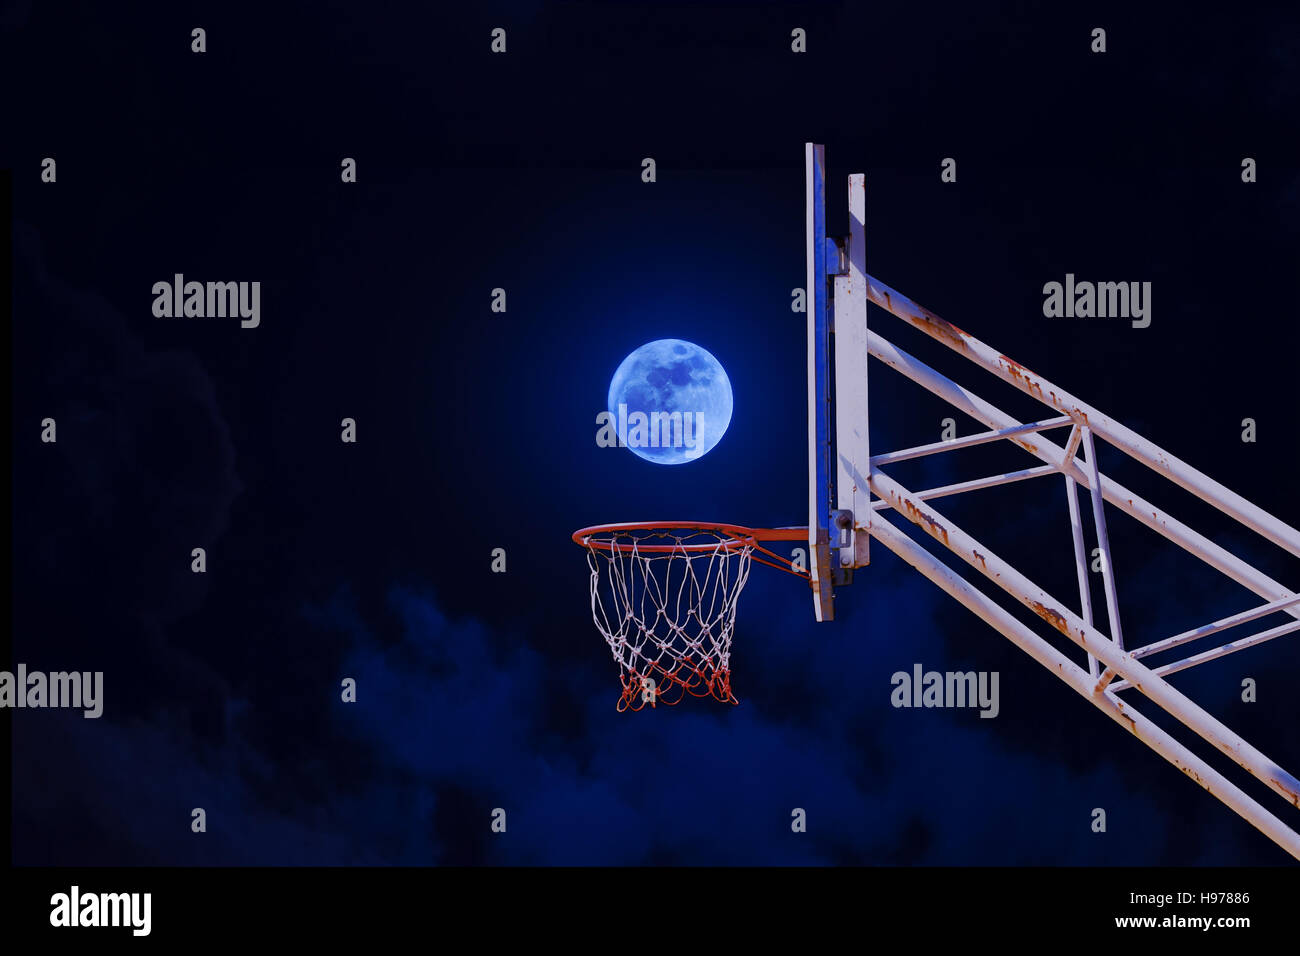 Mond in einen Basketballkorb Stockfotografie - Alamy